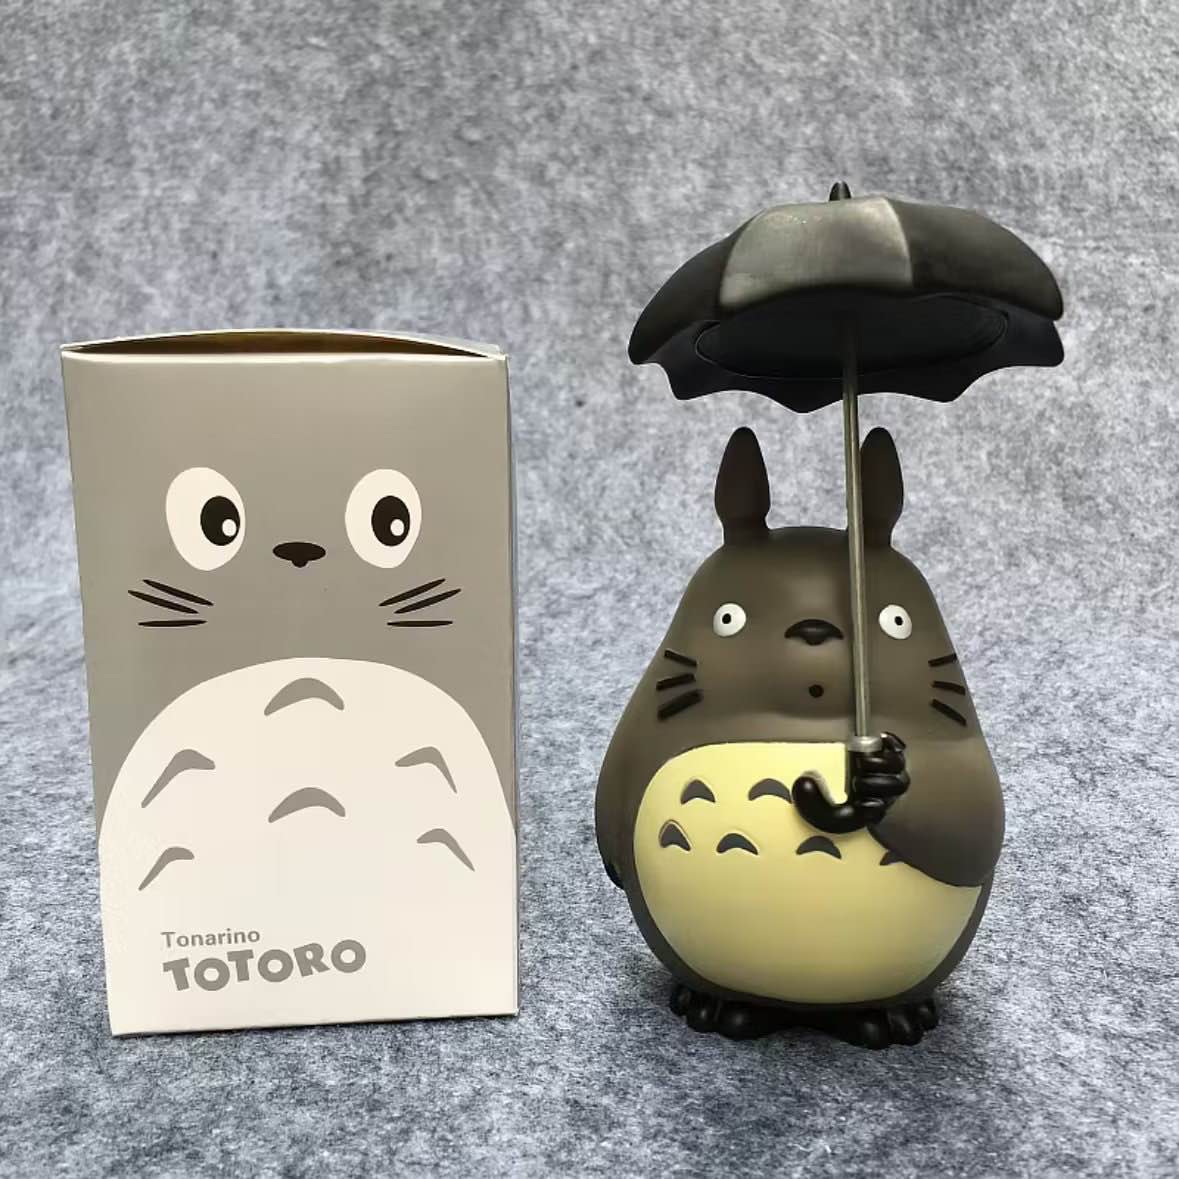 ฟิกเกอร์ & ของเล่นเพื่อการสะสม โทโทโร่เพื่อนรัก (Totoro)ตุ๊กตา โมเดล อนิเมะญี่ปุ่นสุดฮิต ขนาด12-14CM. ส่งไวจากไทย (Nobox)  totoro (nobox) 1